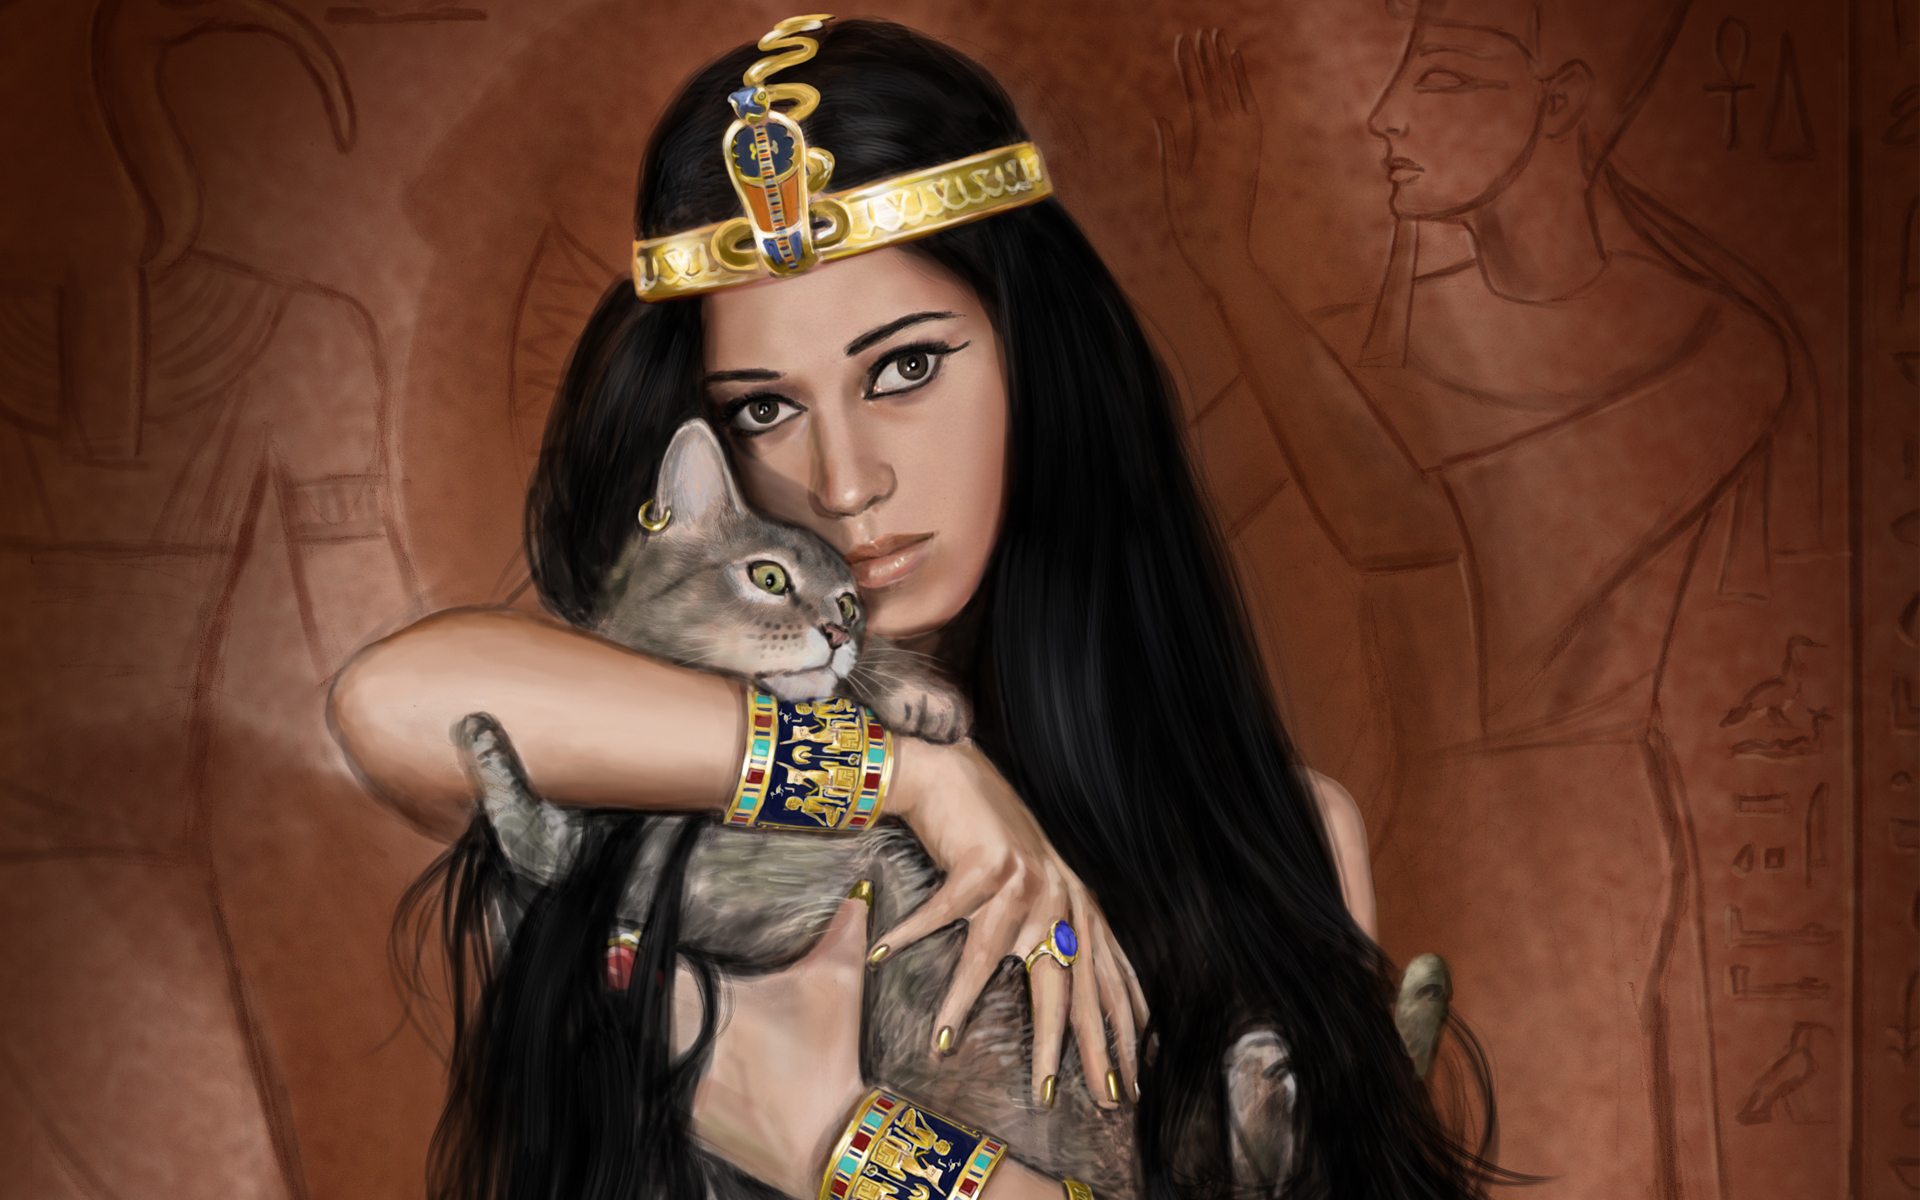 fantasy, egyptian, cat, occult wallpaper for mobile